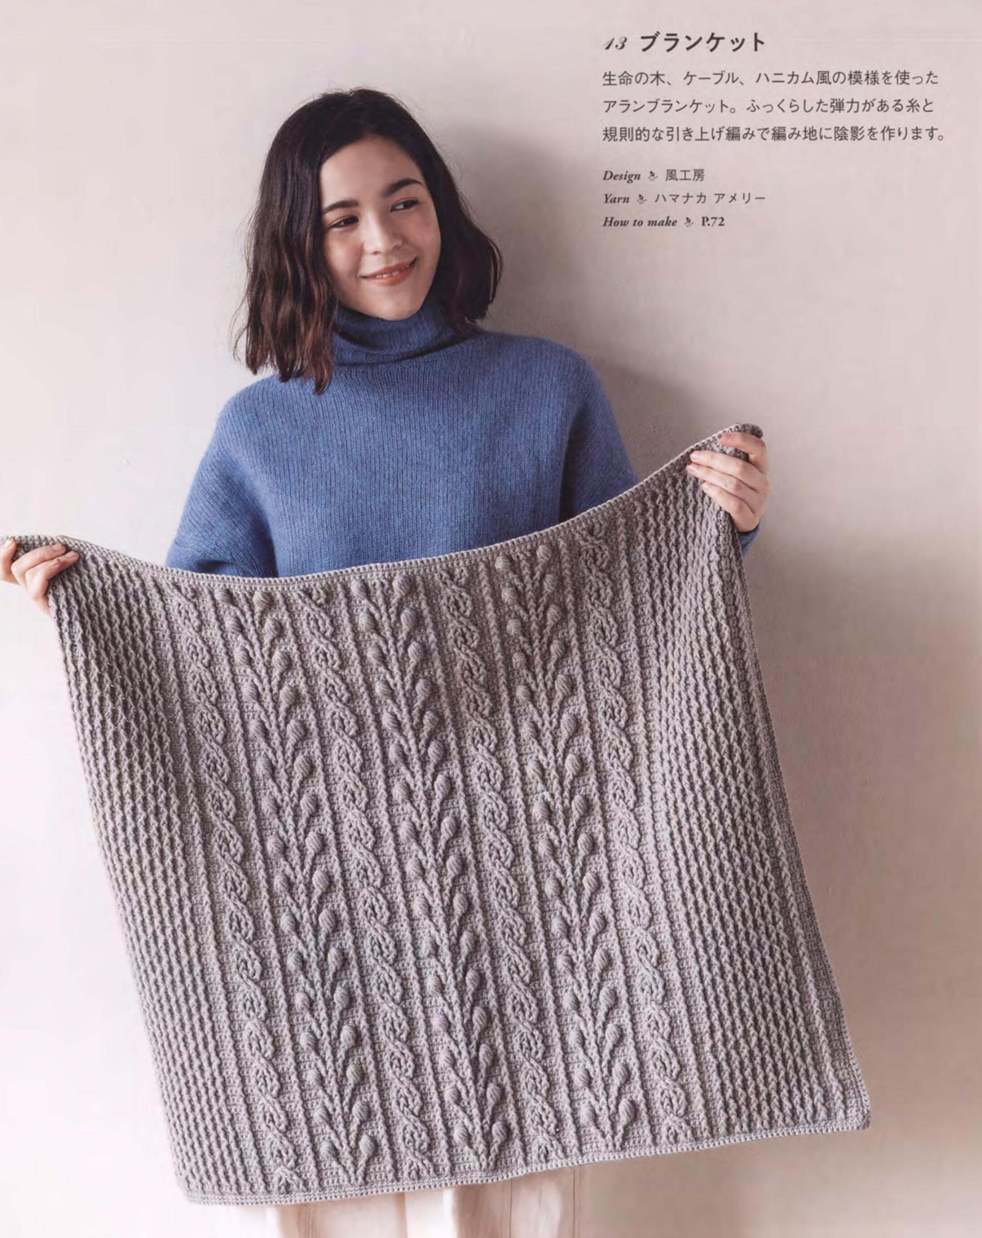 Beautiful crochet arans blanket pattern